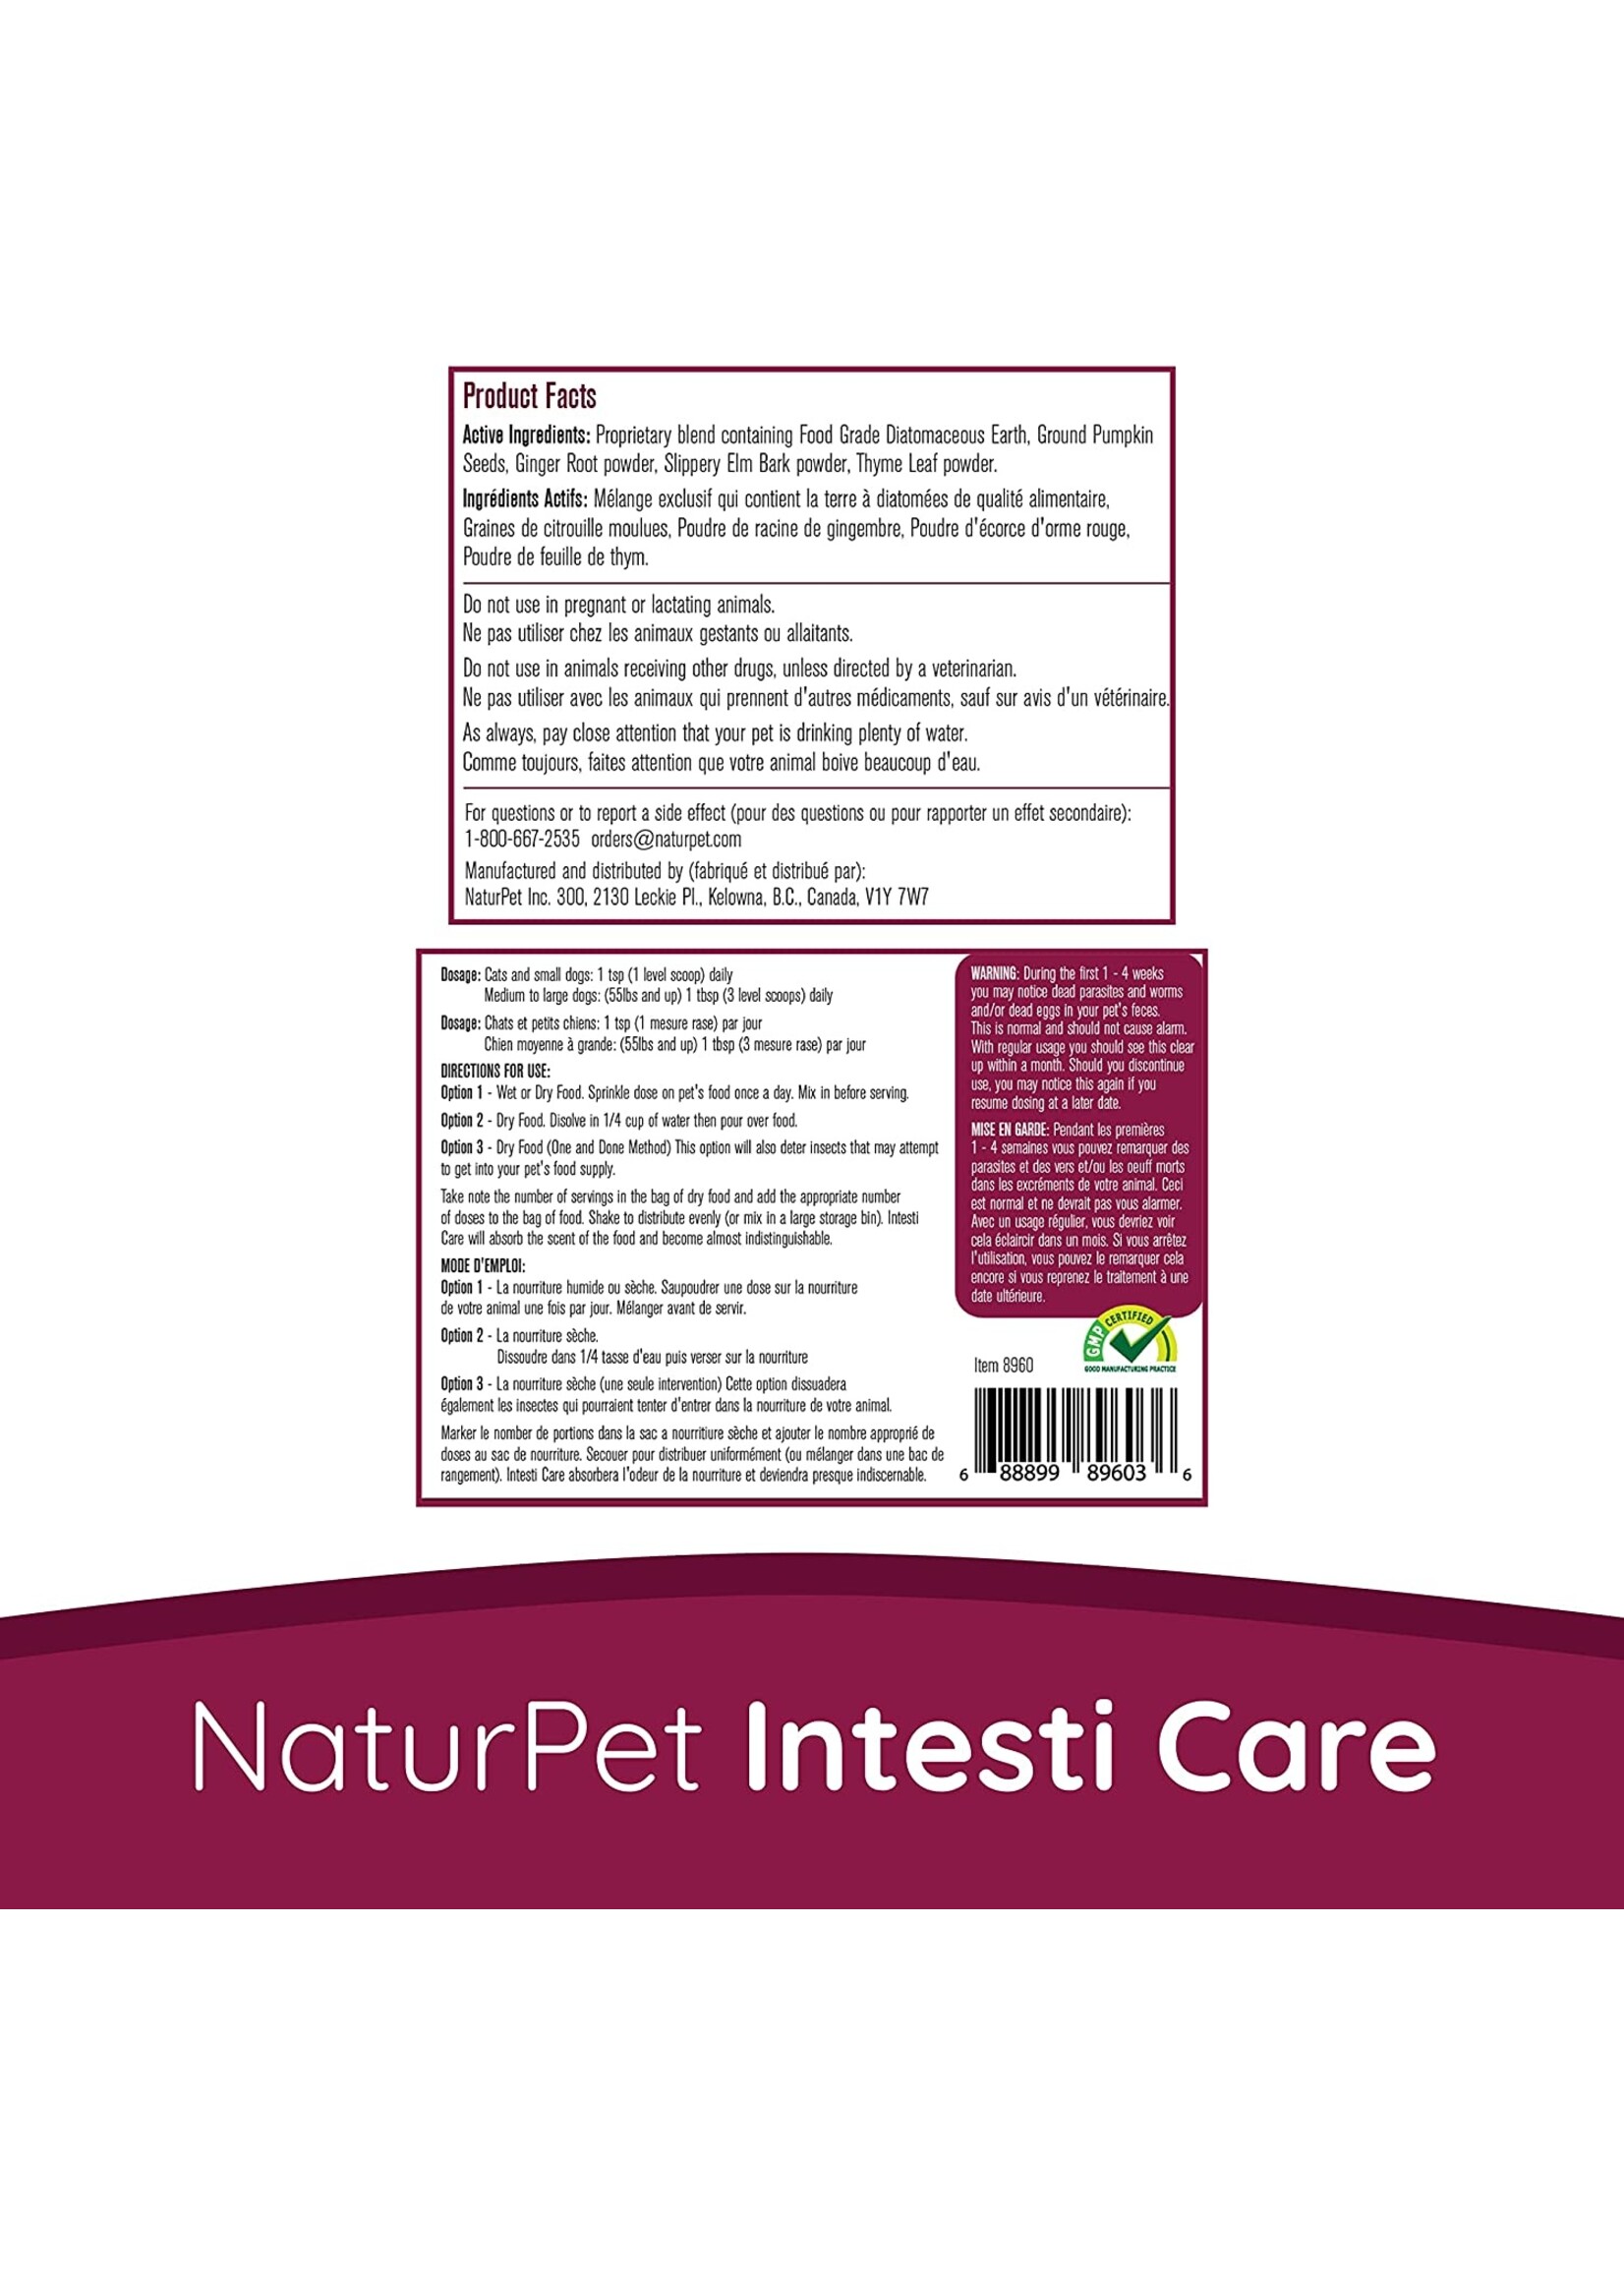 NaturPet NaturPet Intesti Care Powder 25oz